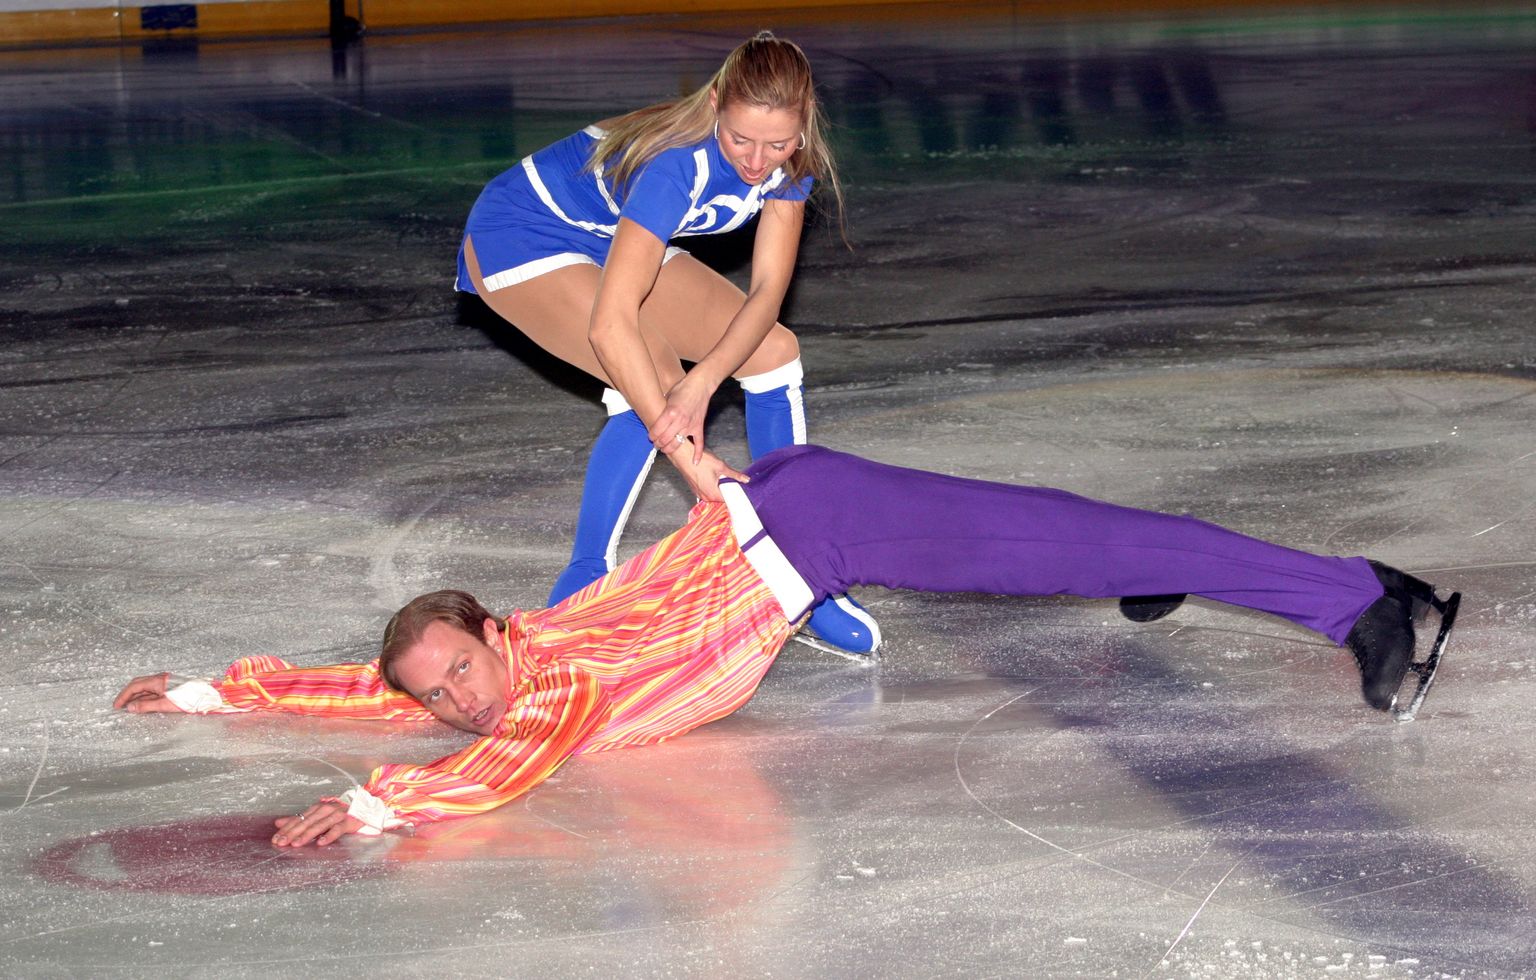 Torino olümpiavõitjad jäätantsus Tatjana Navka ja Roman Kostomarov.